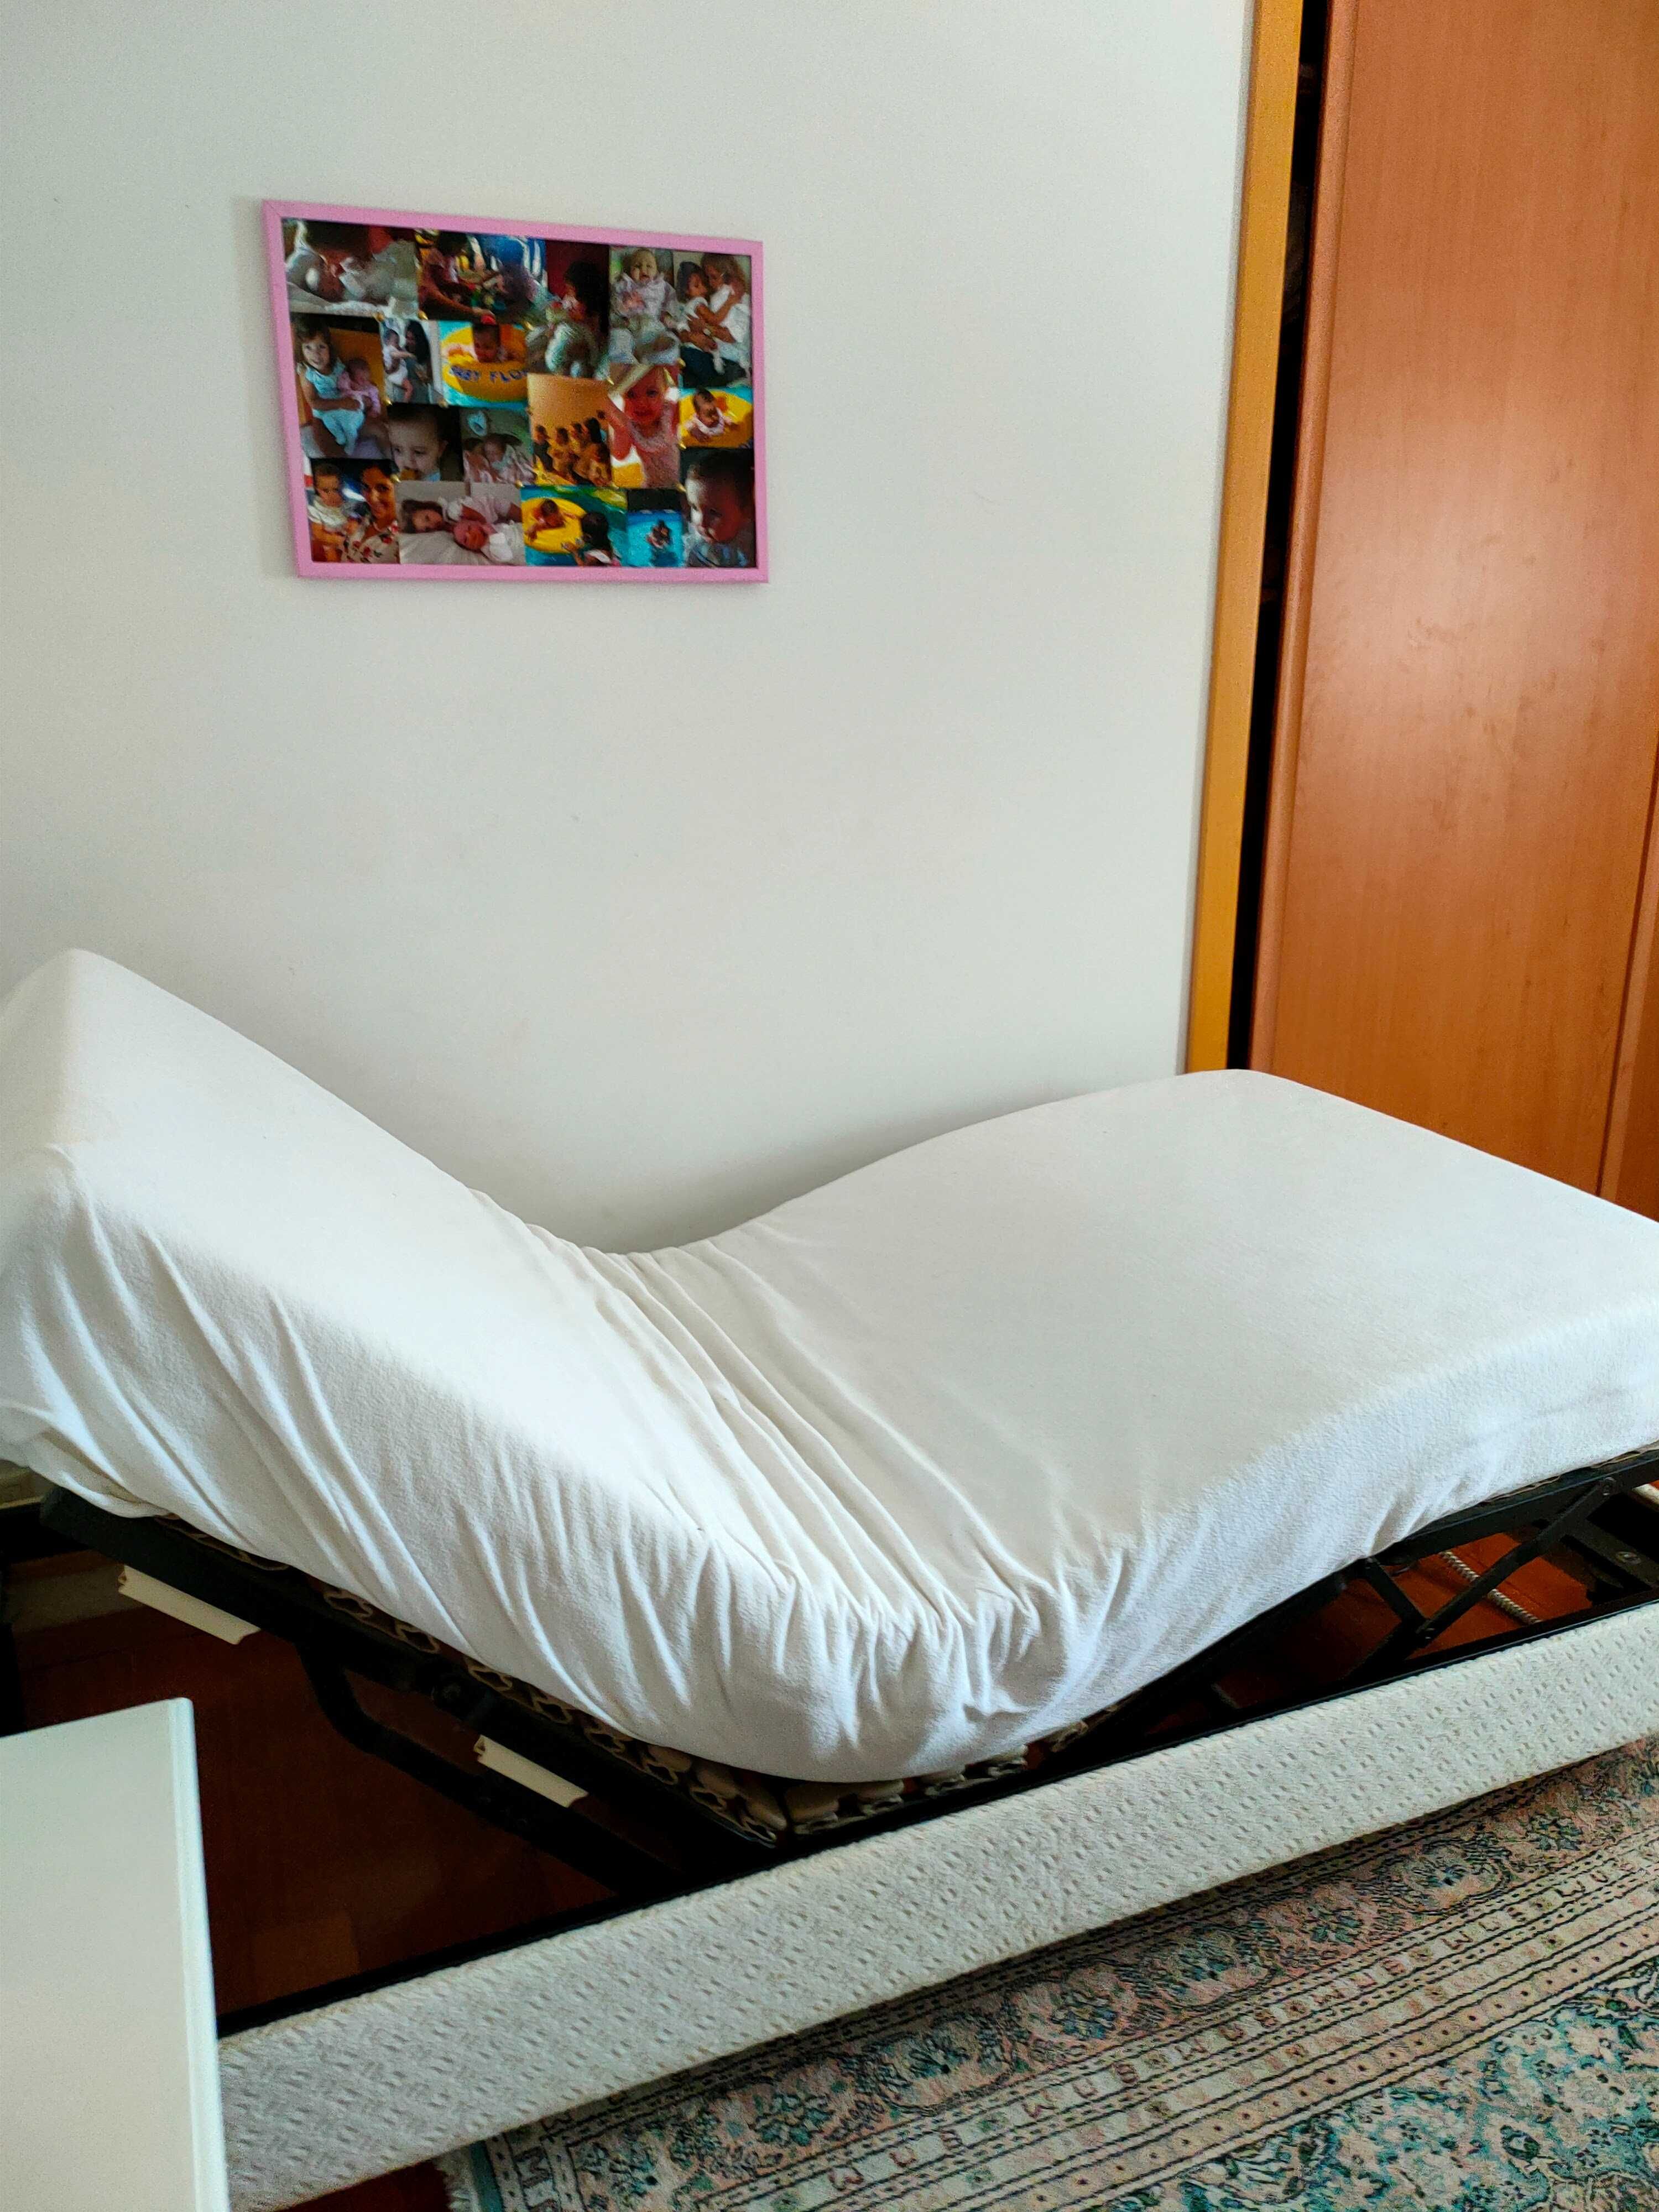 cama articulada como nova usada poucos meses